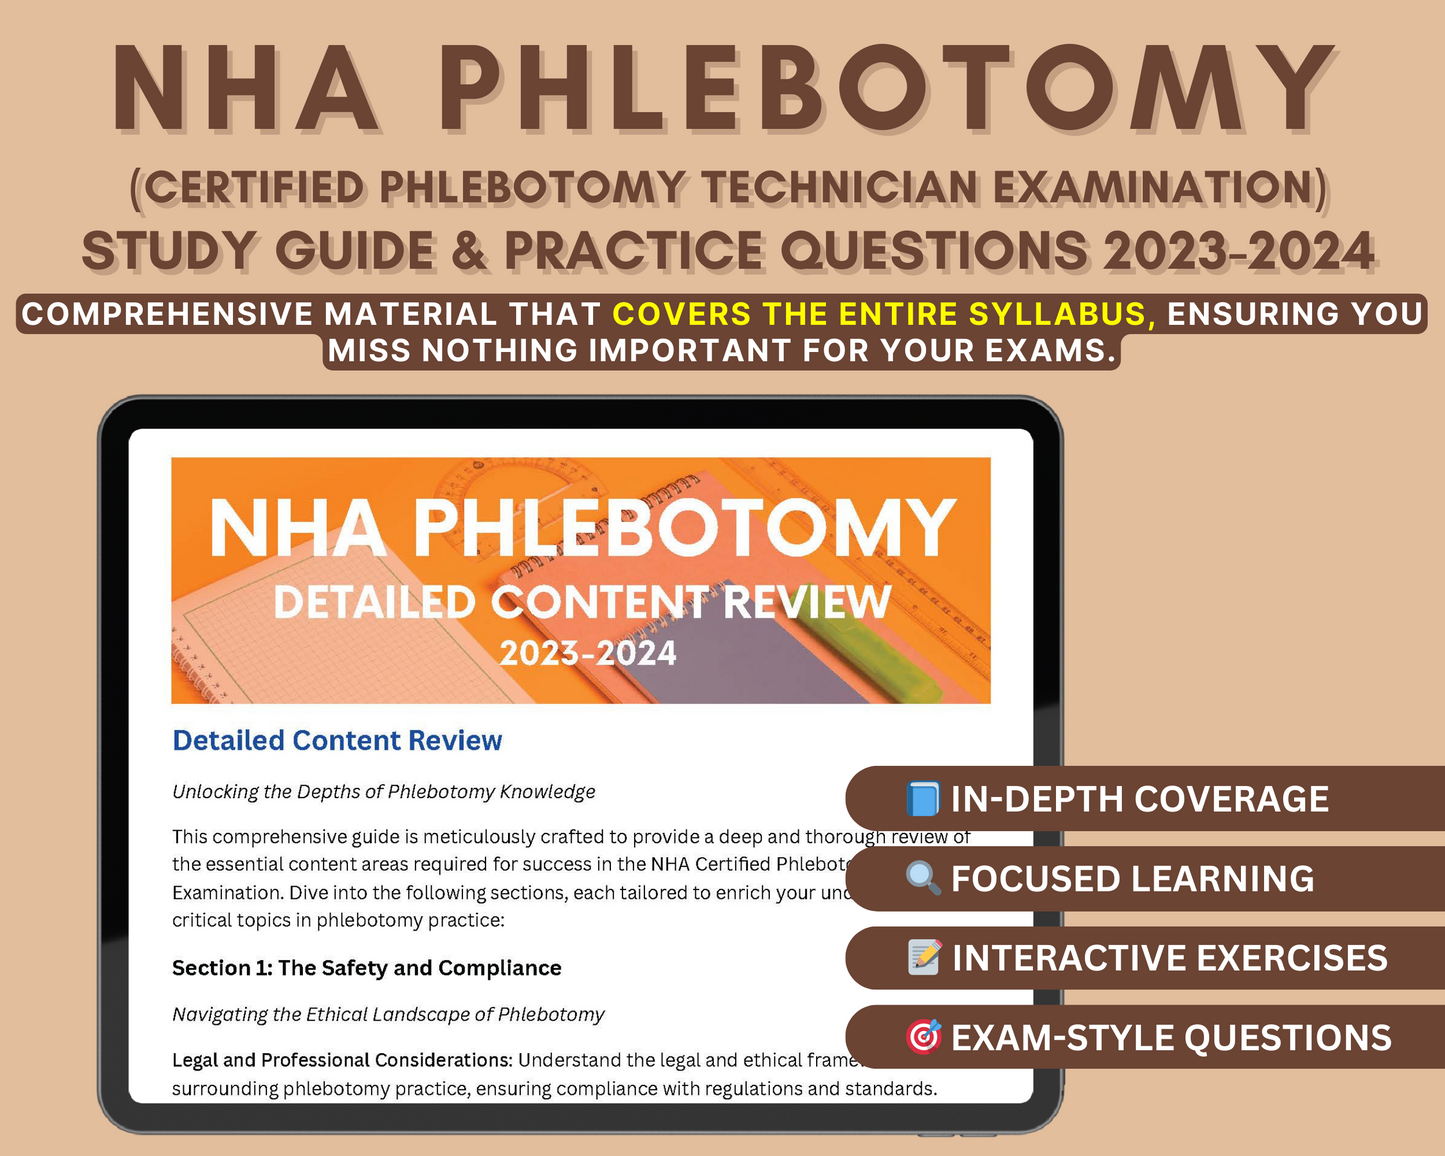 NHA Phlebotomy Exam Prep 2023-2024: Comprehensive Study Guide for Aspiring Medical Professionals